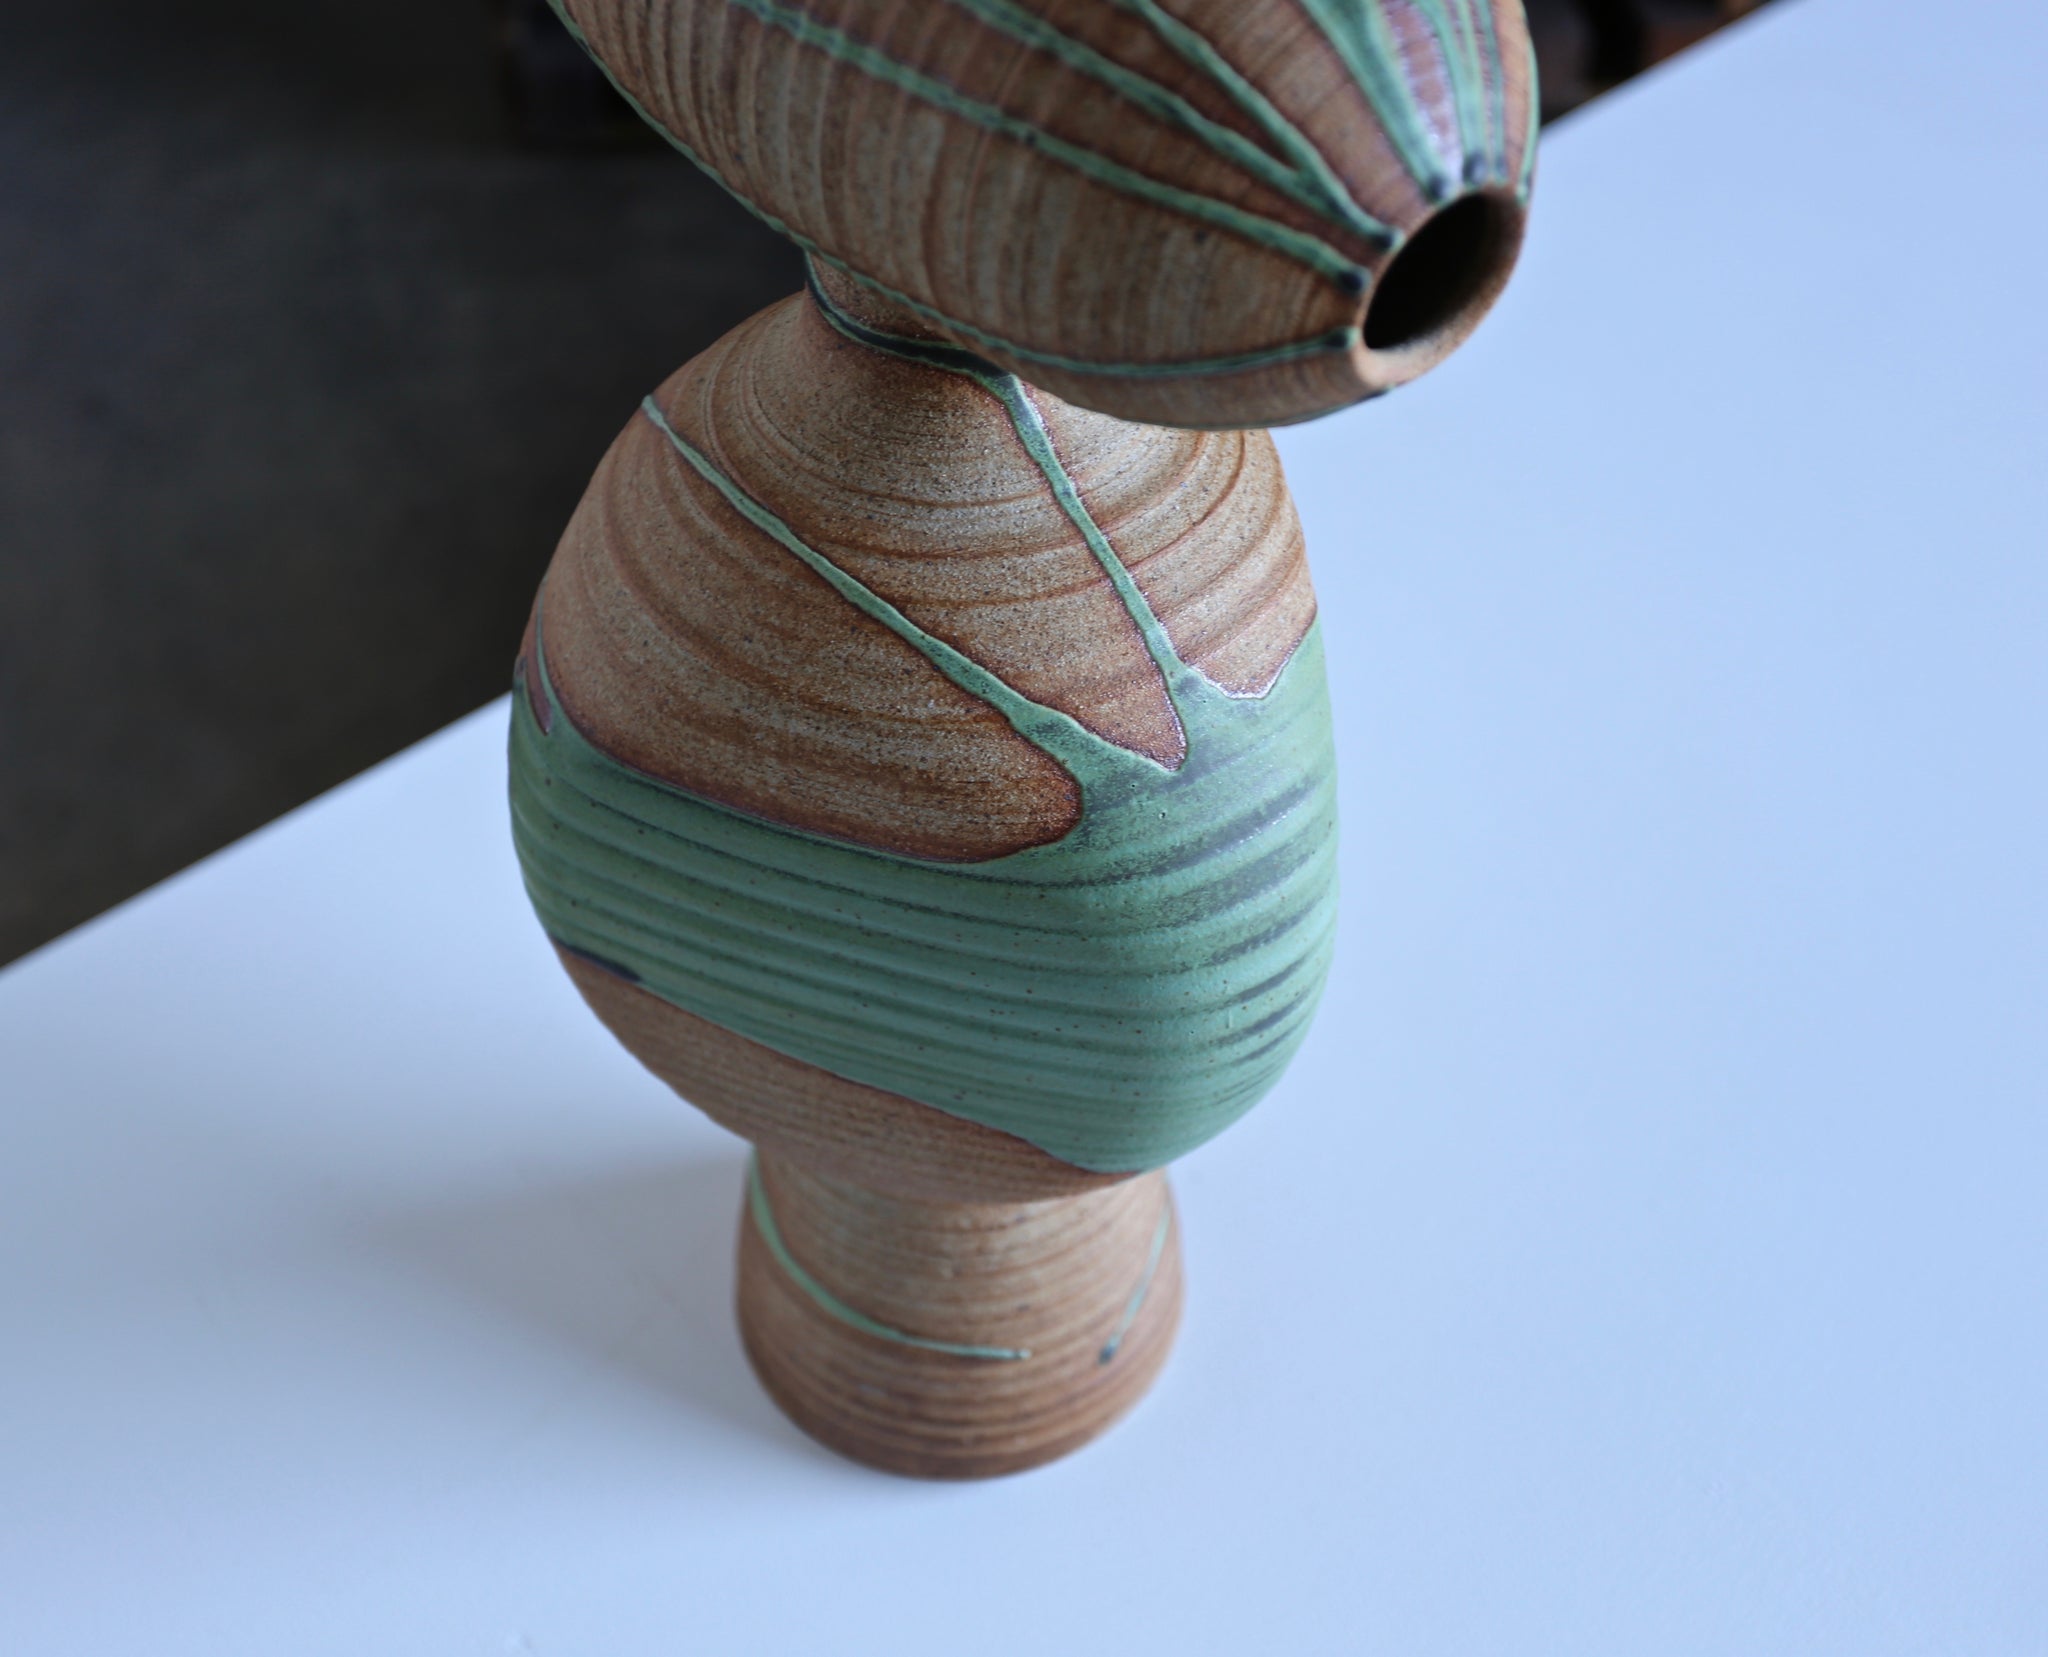 = SOLD = Tim Keenan Ceramic Sculpture